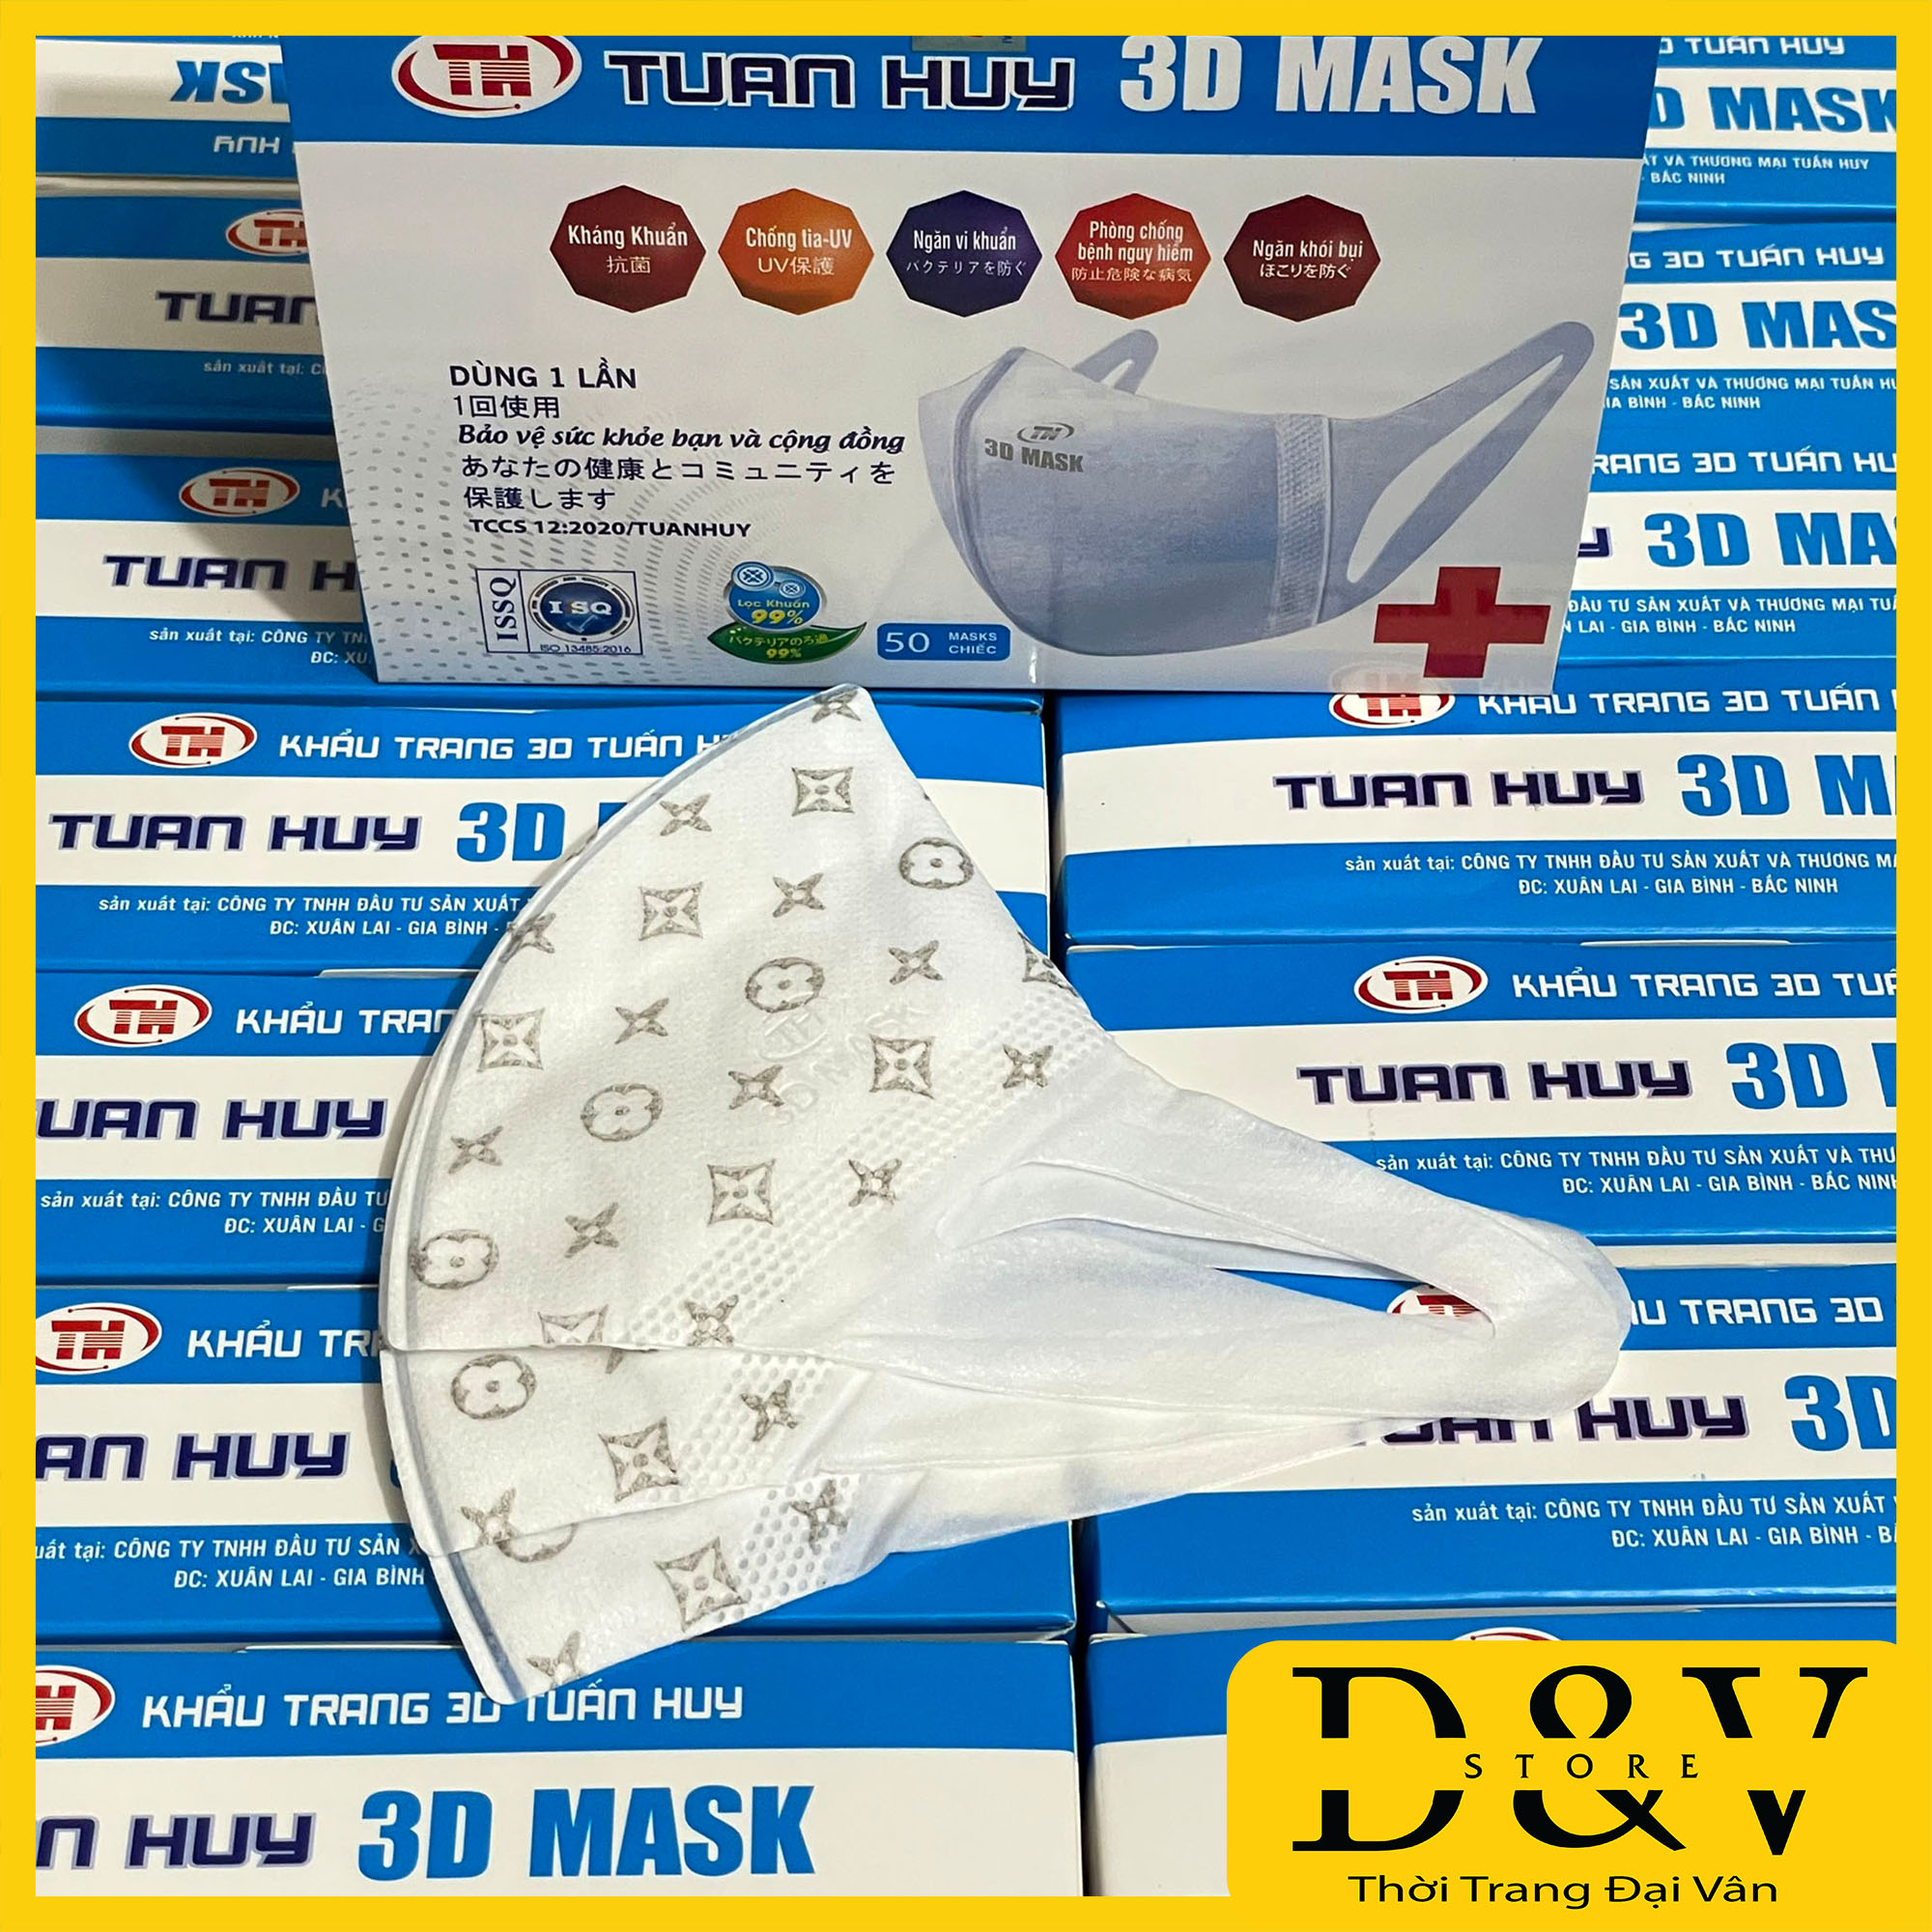 Khẩu trang 3D Mask LV Hoa hộp 50 cái kháng khuẩn, có tem niêm phong, đạt tiêu chuẩn ISO và kiểm định Bộ Y Tế, Khẩu trang y tế 3D Mask, khẩu trang 3d lv